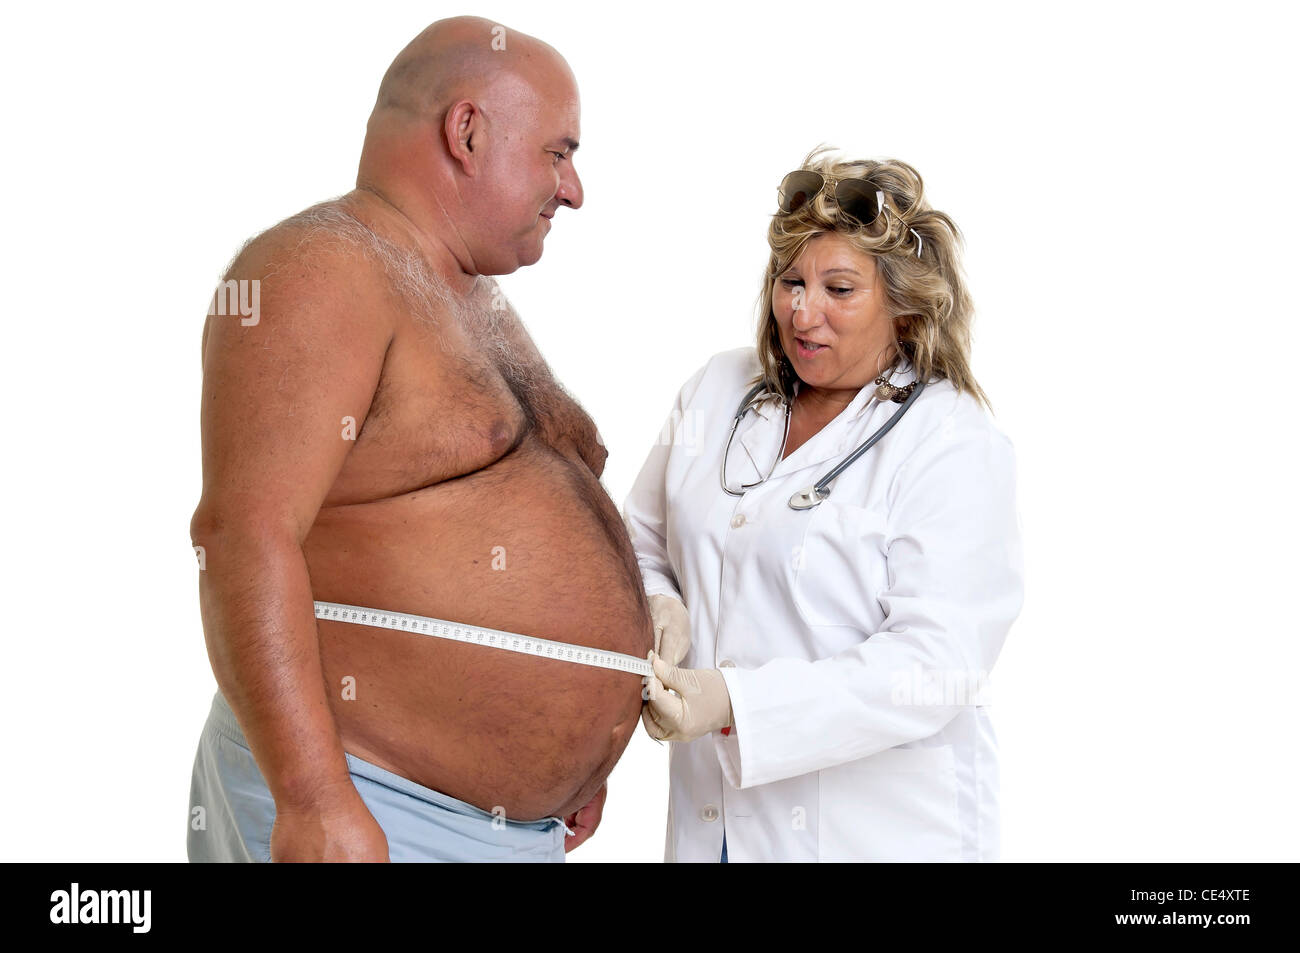 Grand mâle patient avec gros ventre et médecin Banque D'Images